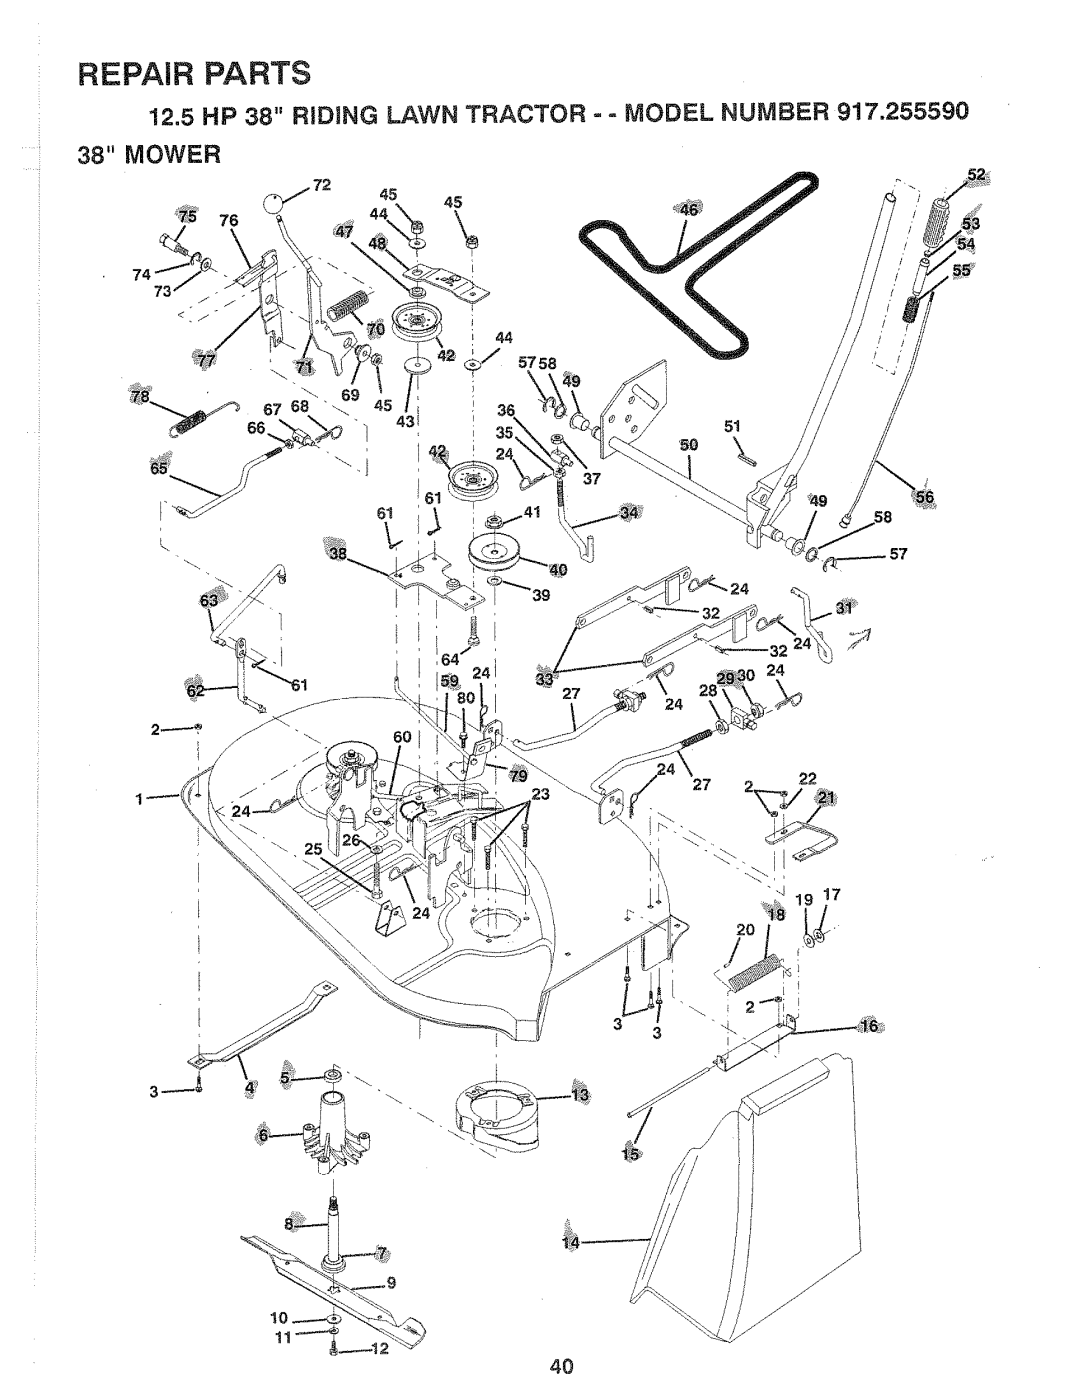 Sears 917.25559 manual Mower, Repair Parts 